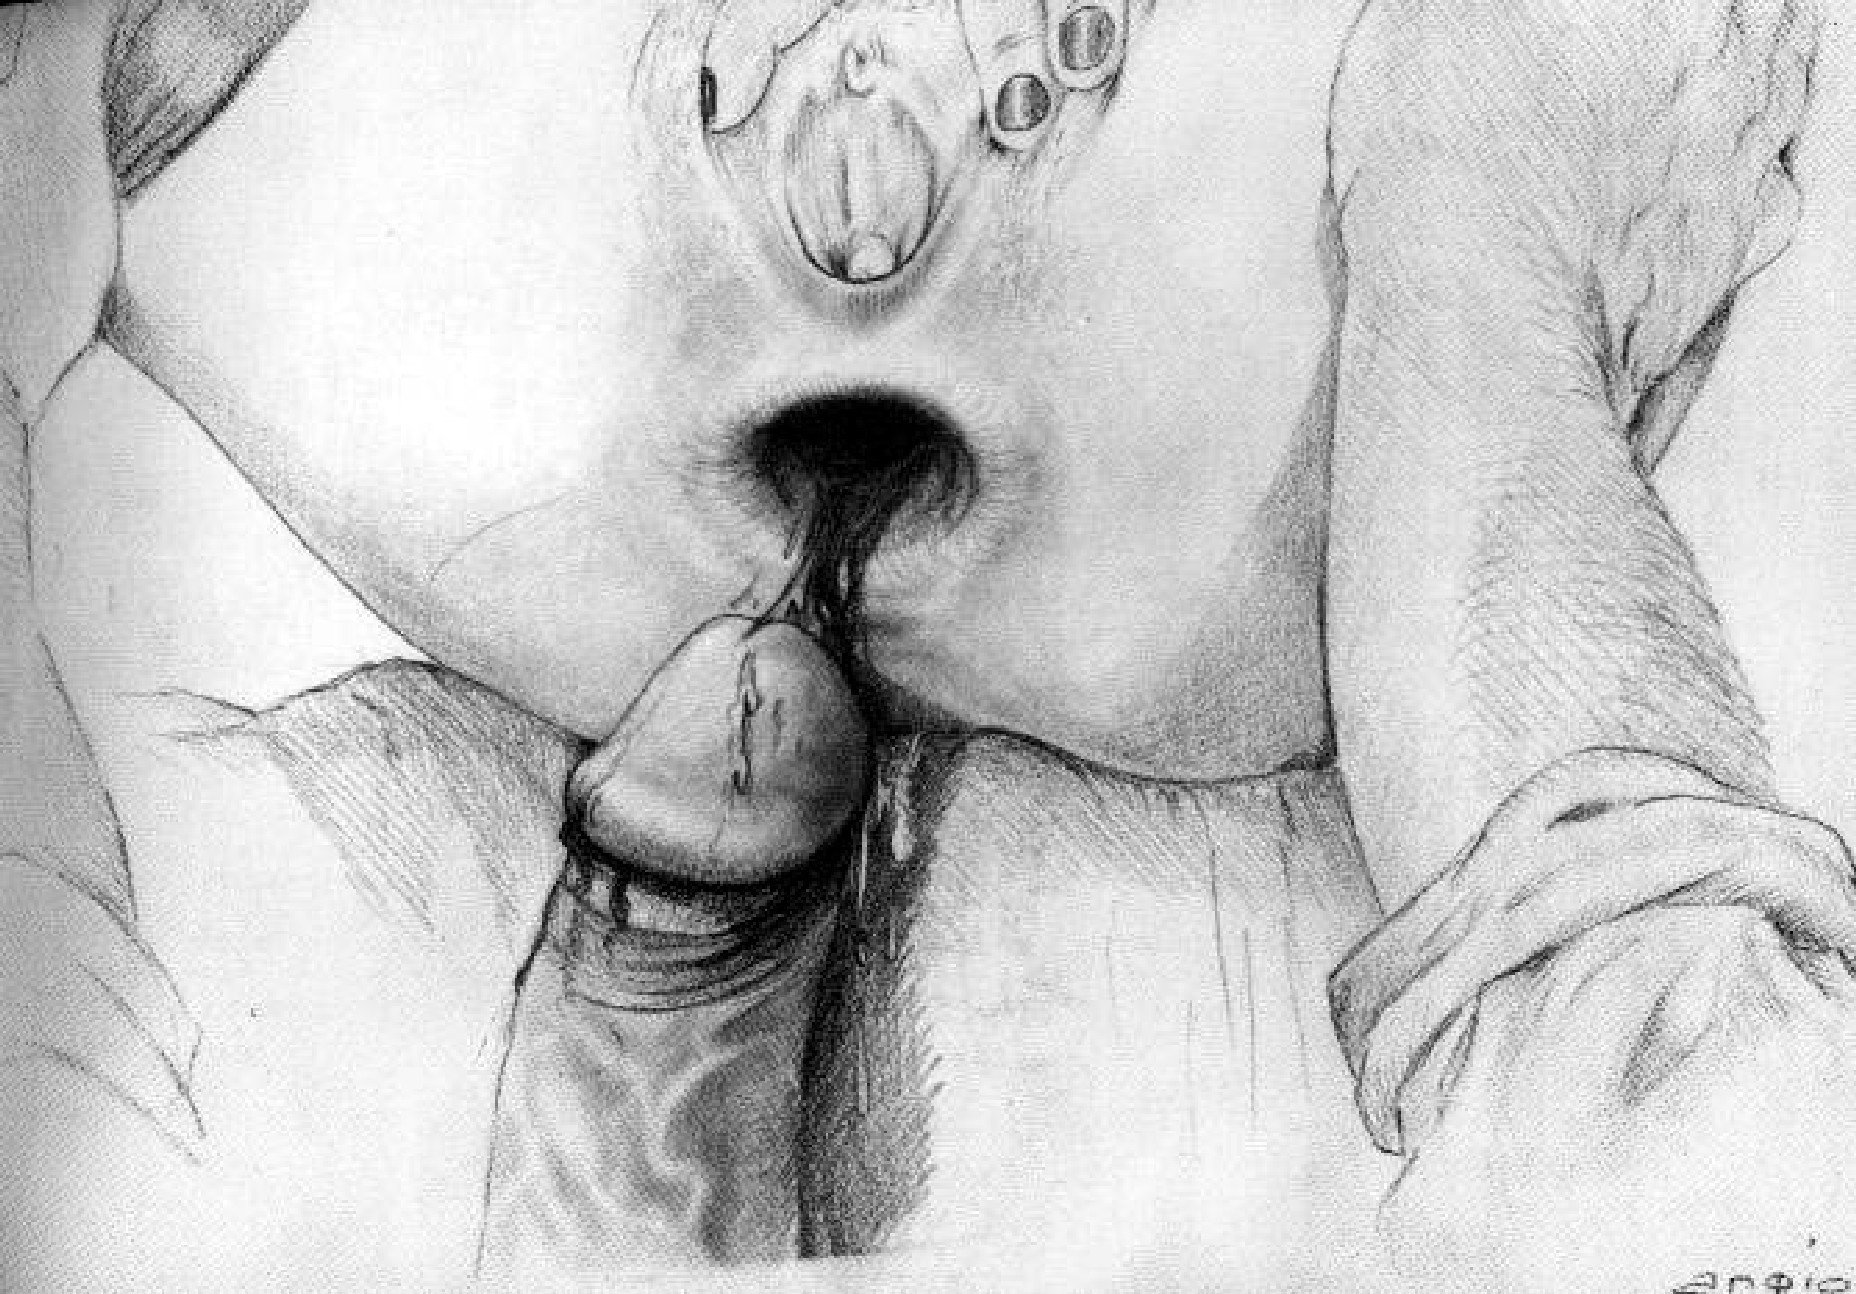 Секс рисованный карандашом (59 фото) порно и эротика goloe me. goloe.me. 